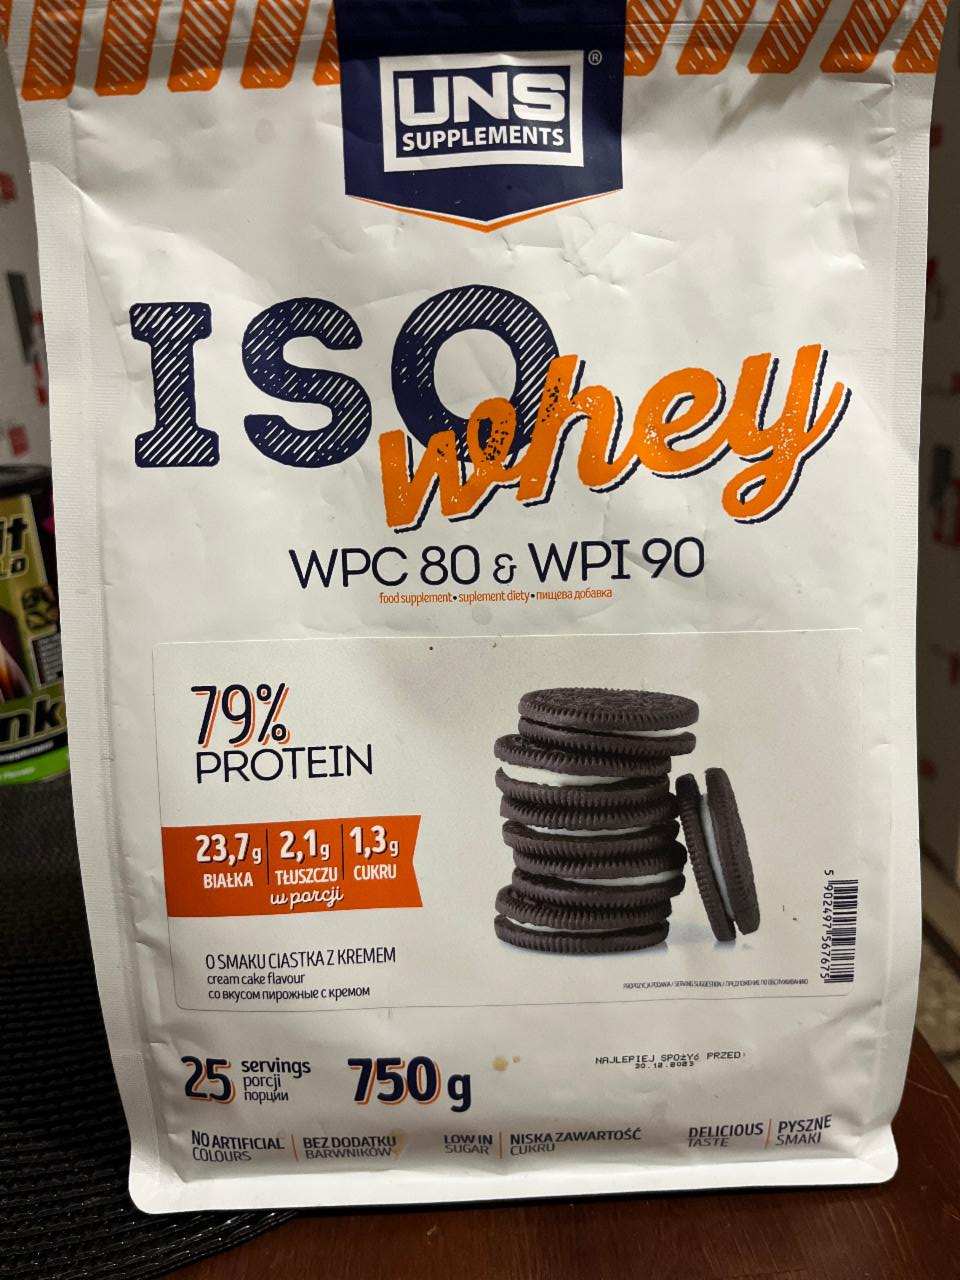 Фото - Протеин Iso Whey 79% со вкусом печенья с кремом UNS Supplements